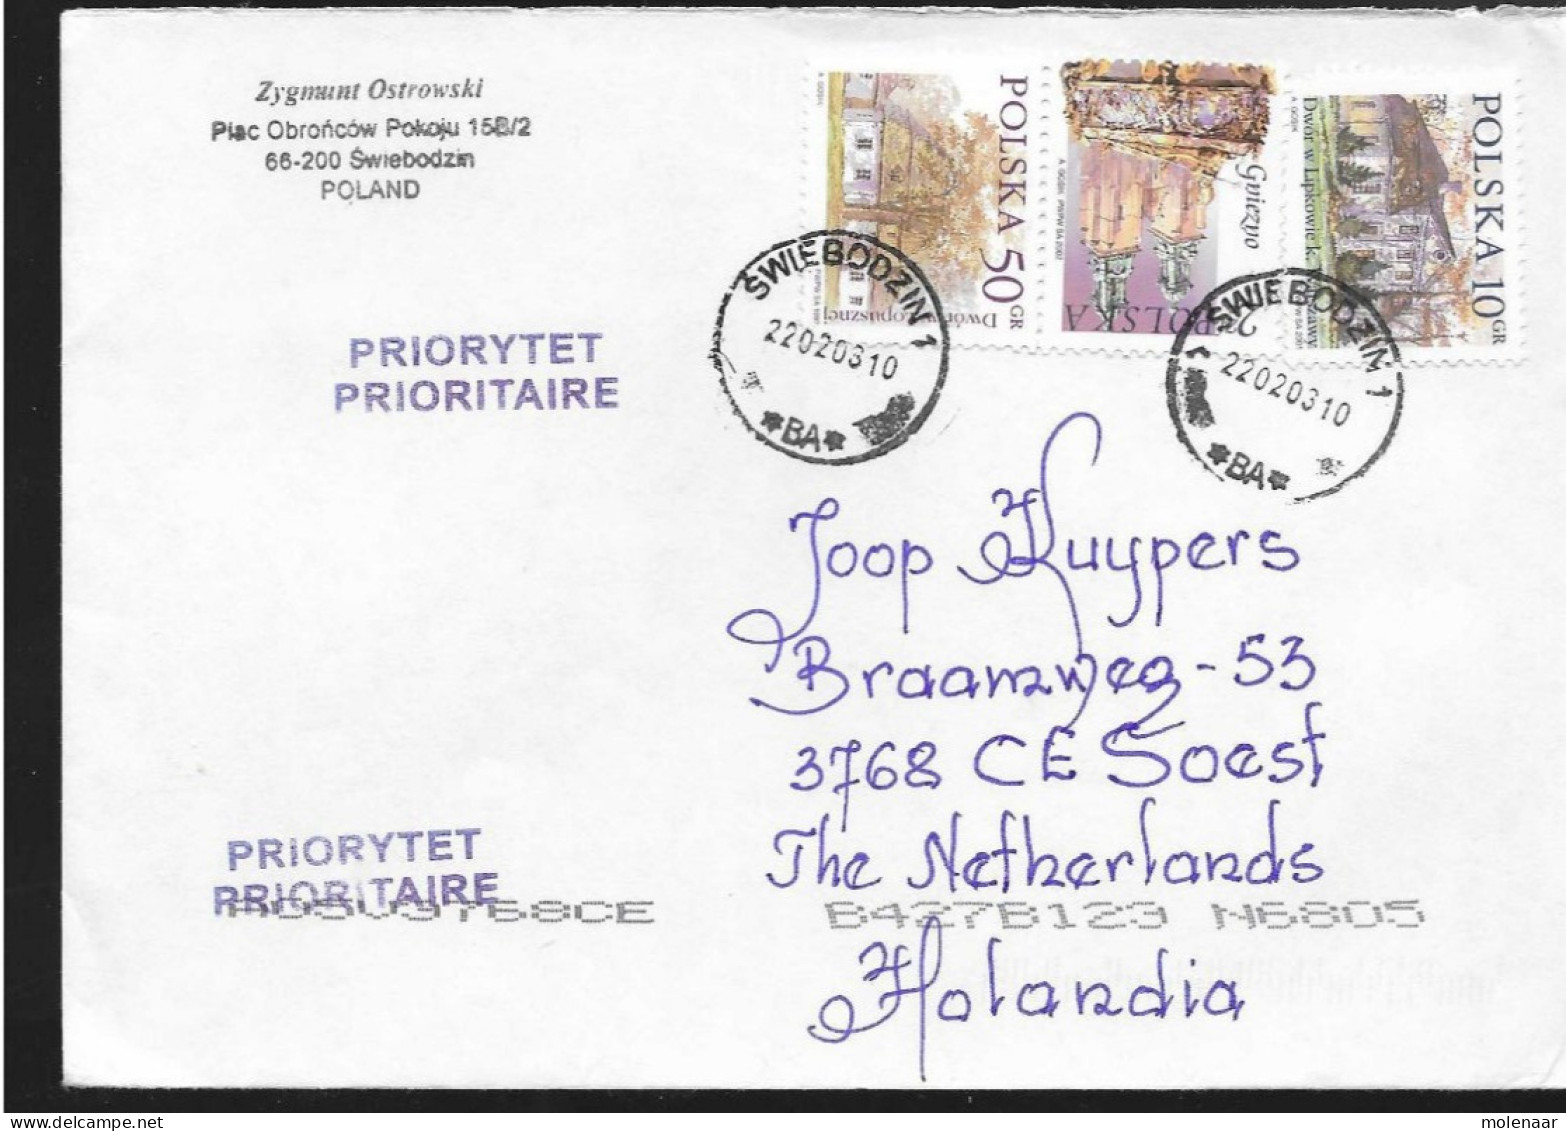 Postzegels > Europa > Polen > 1944-.... Republiek > 2001-10 >brief Ui 2003 Met 3 Postzegels (17119)17118 - Lettres & Documents